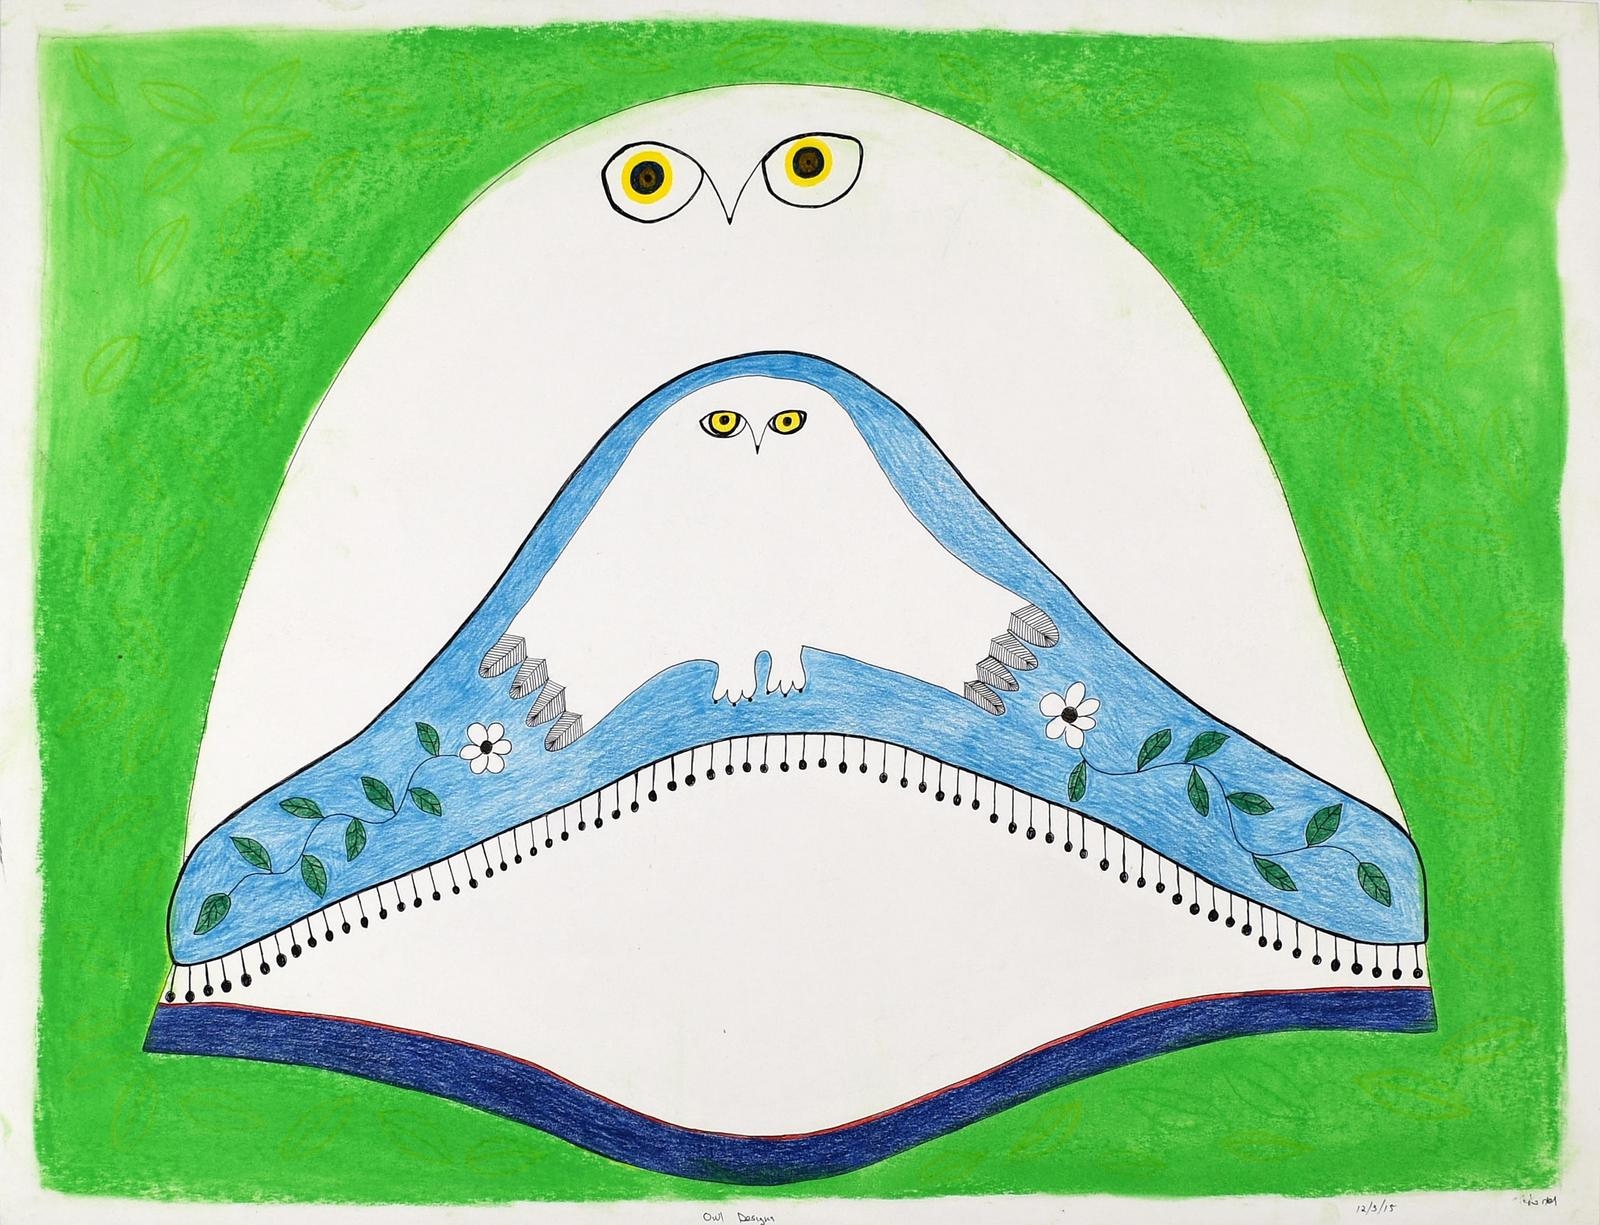 OWL DESIGNS by Ningeokuluk Teevee, 2015